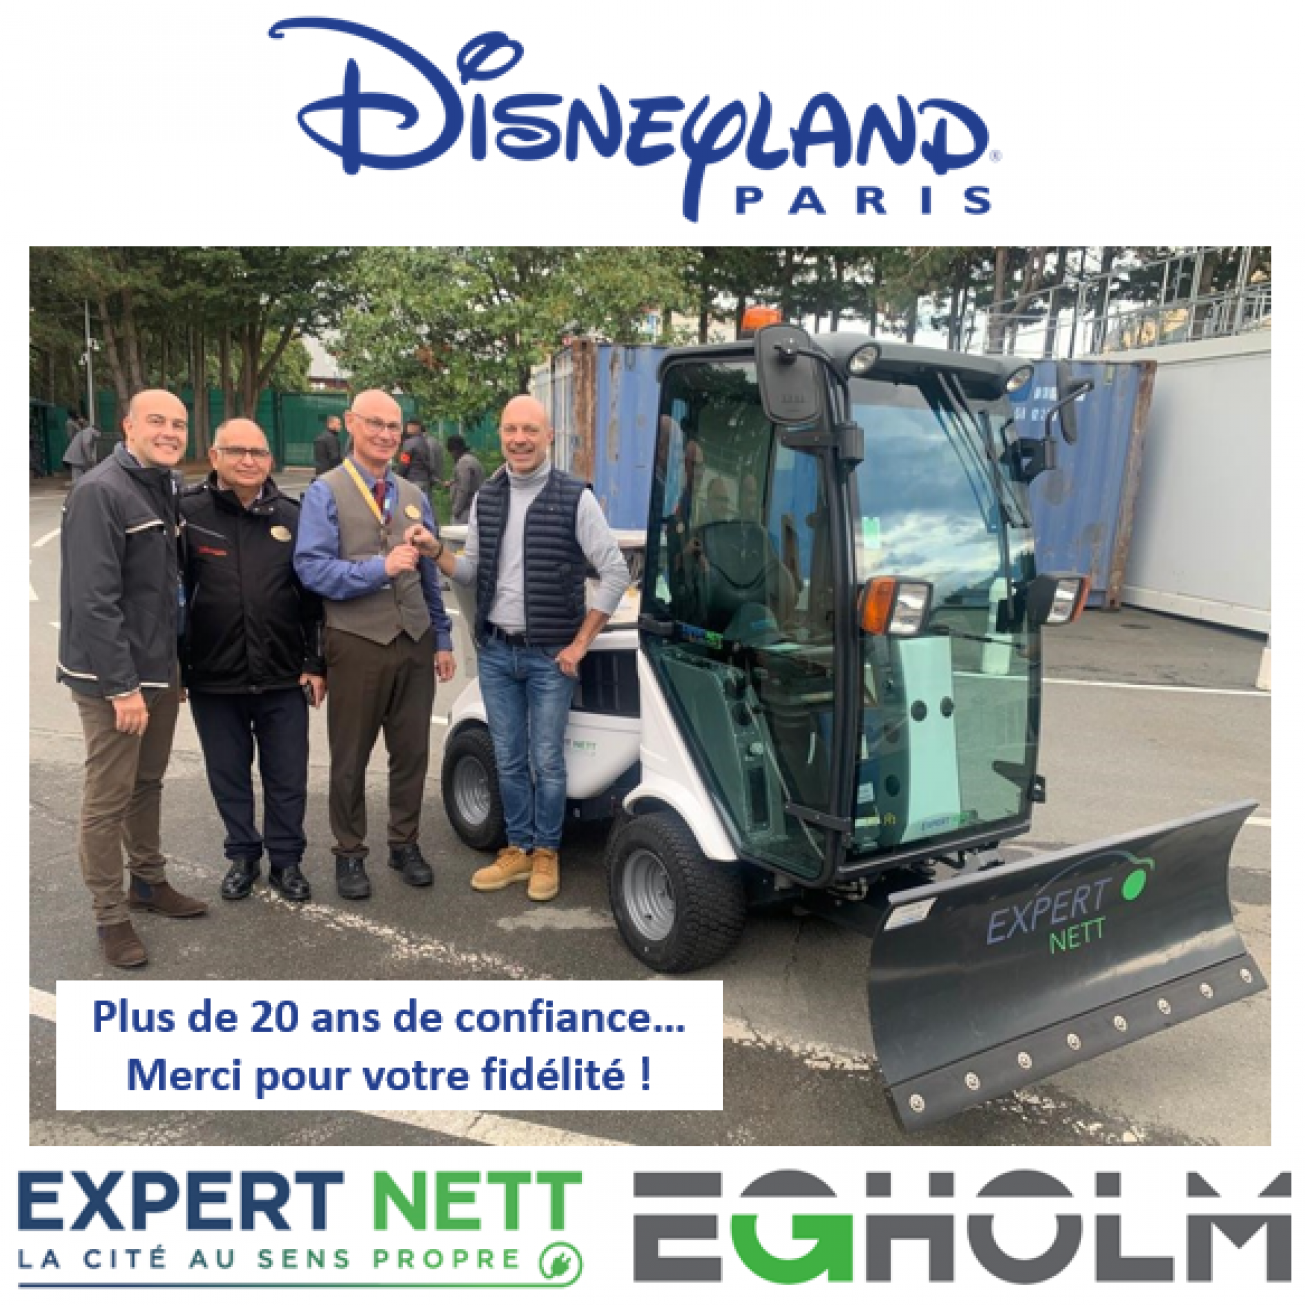 Disneyland Paris fait confiance à Expert Nett depuis plus de 20 ans…